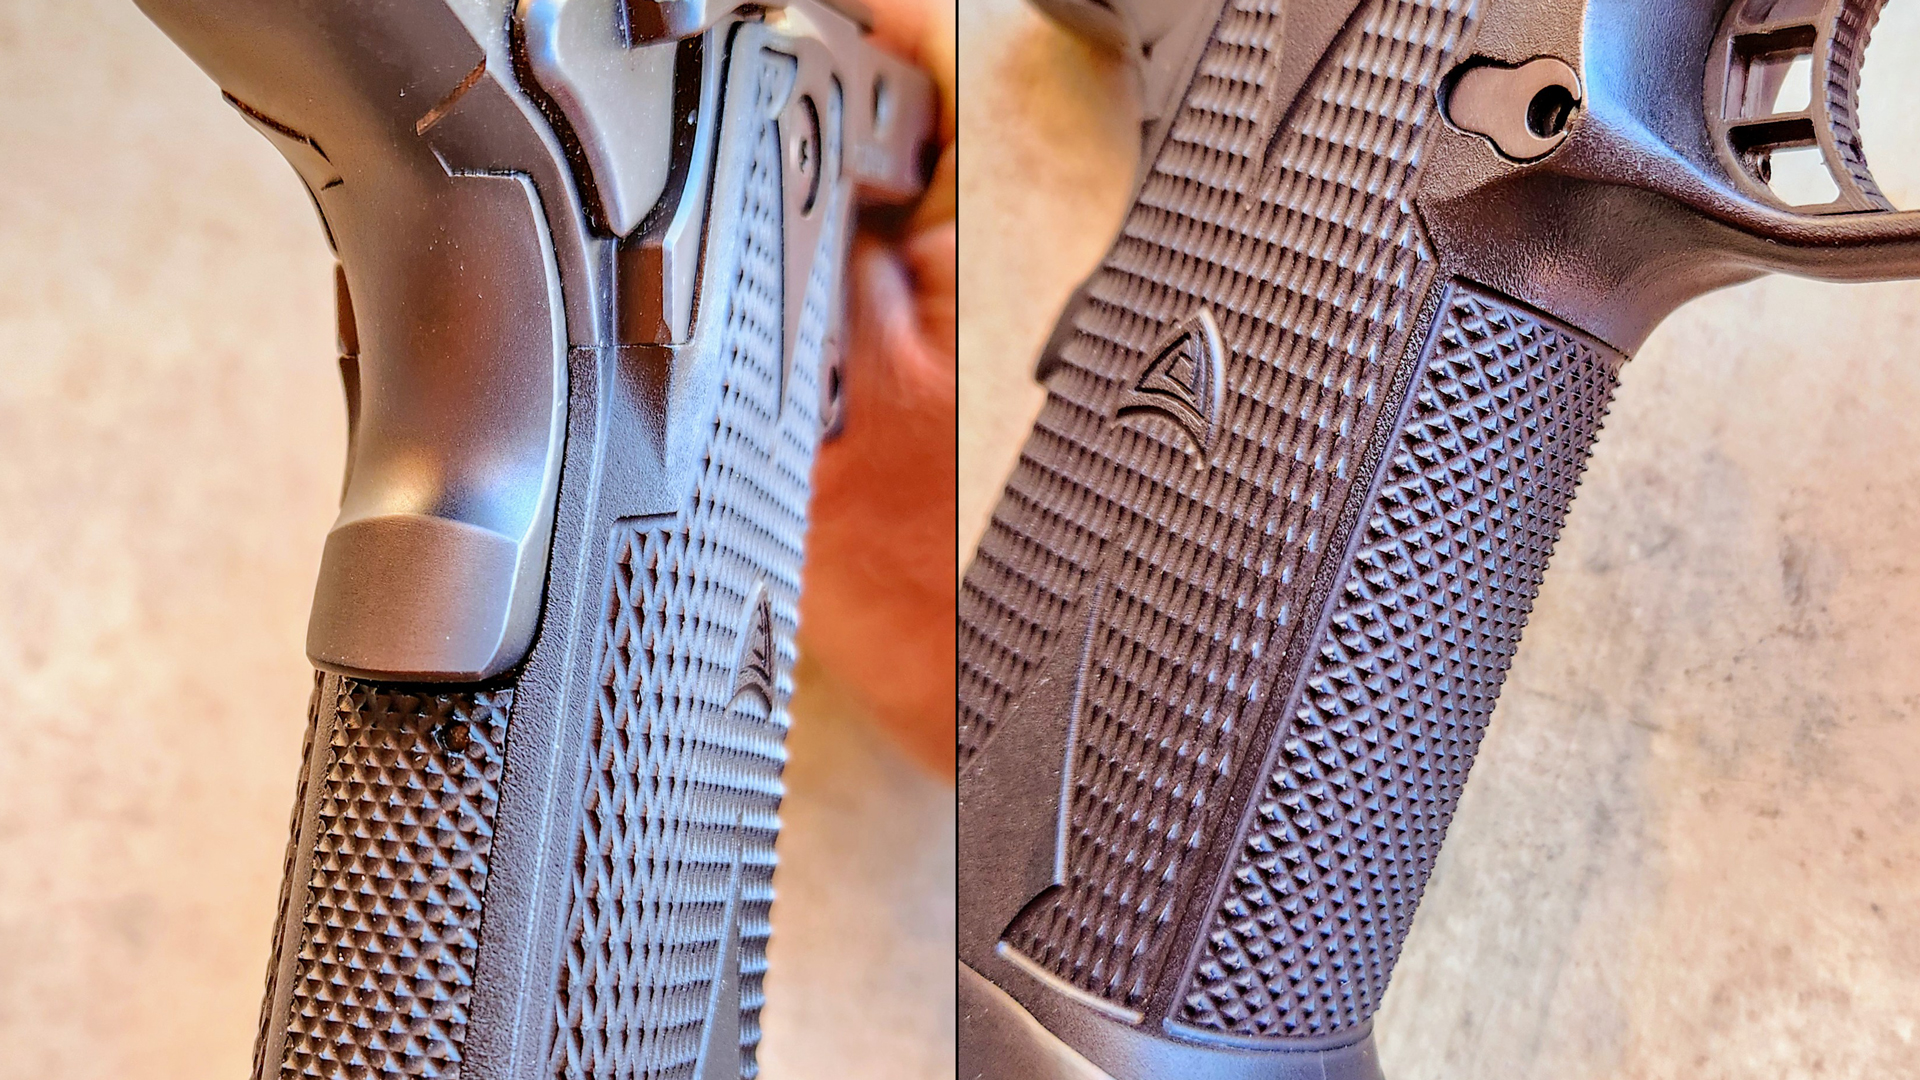 Alchemy Custom handgun opposing images comparison details grip safety trigger checkering